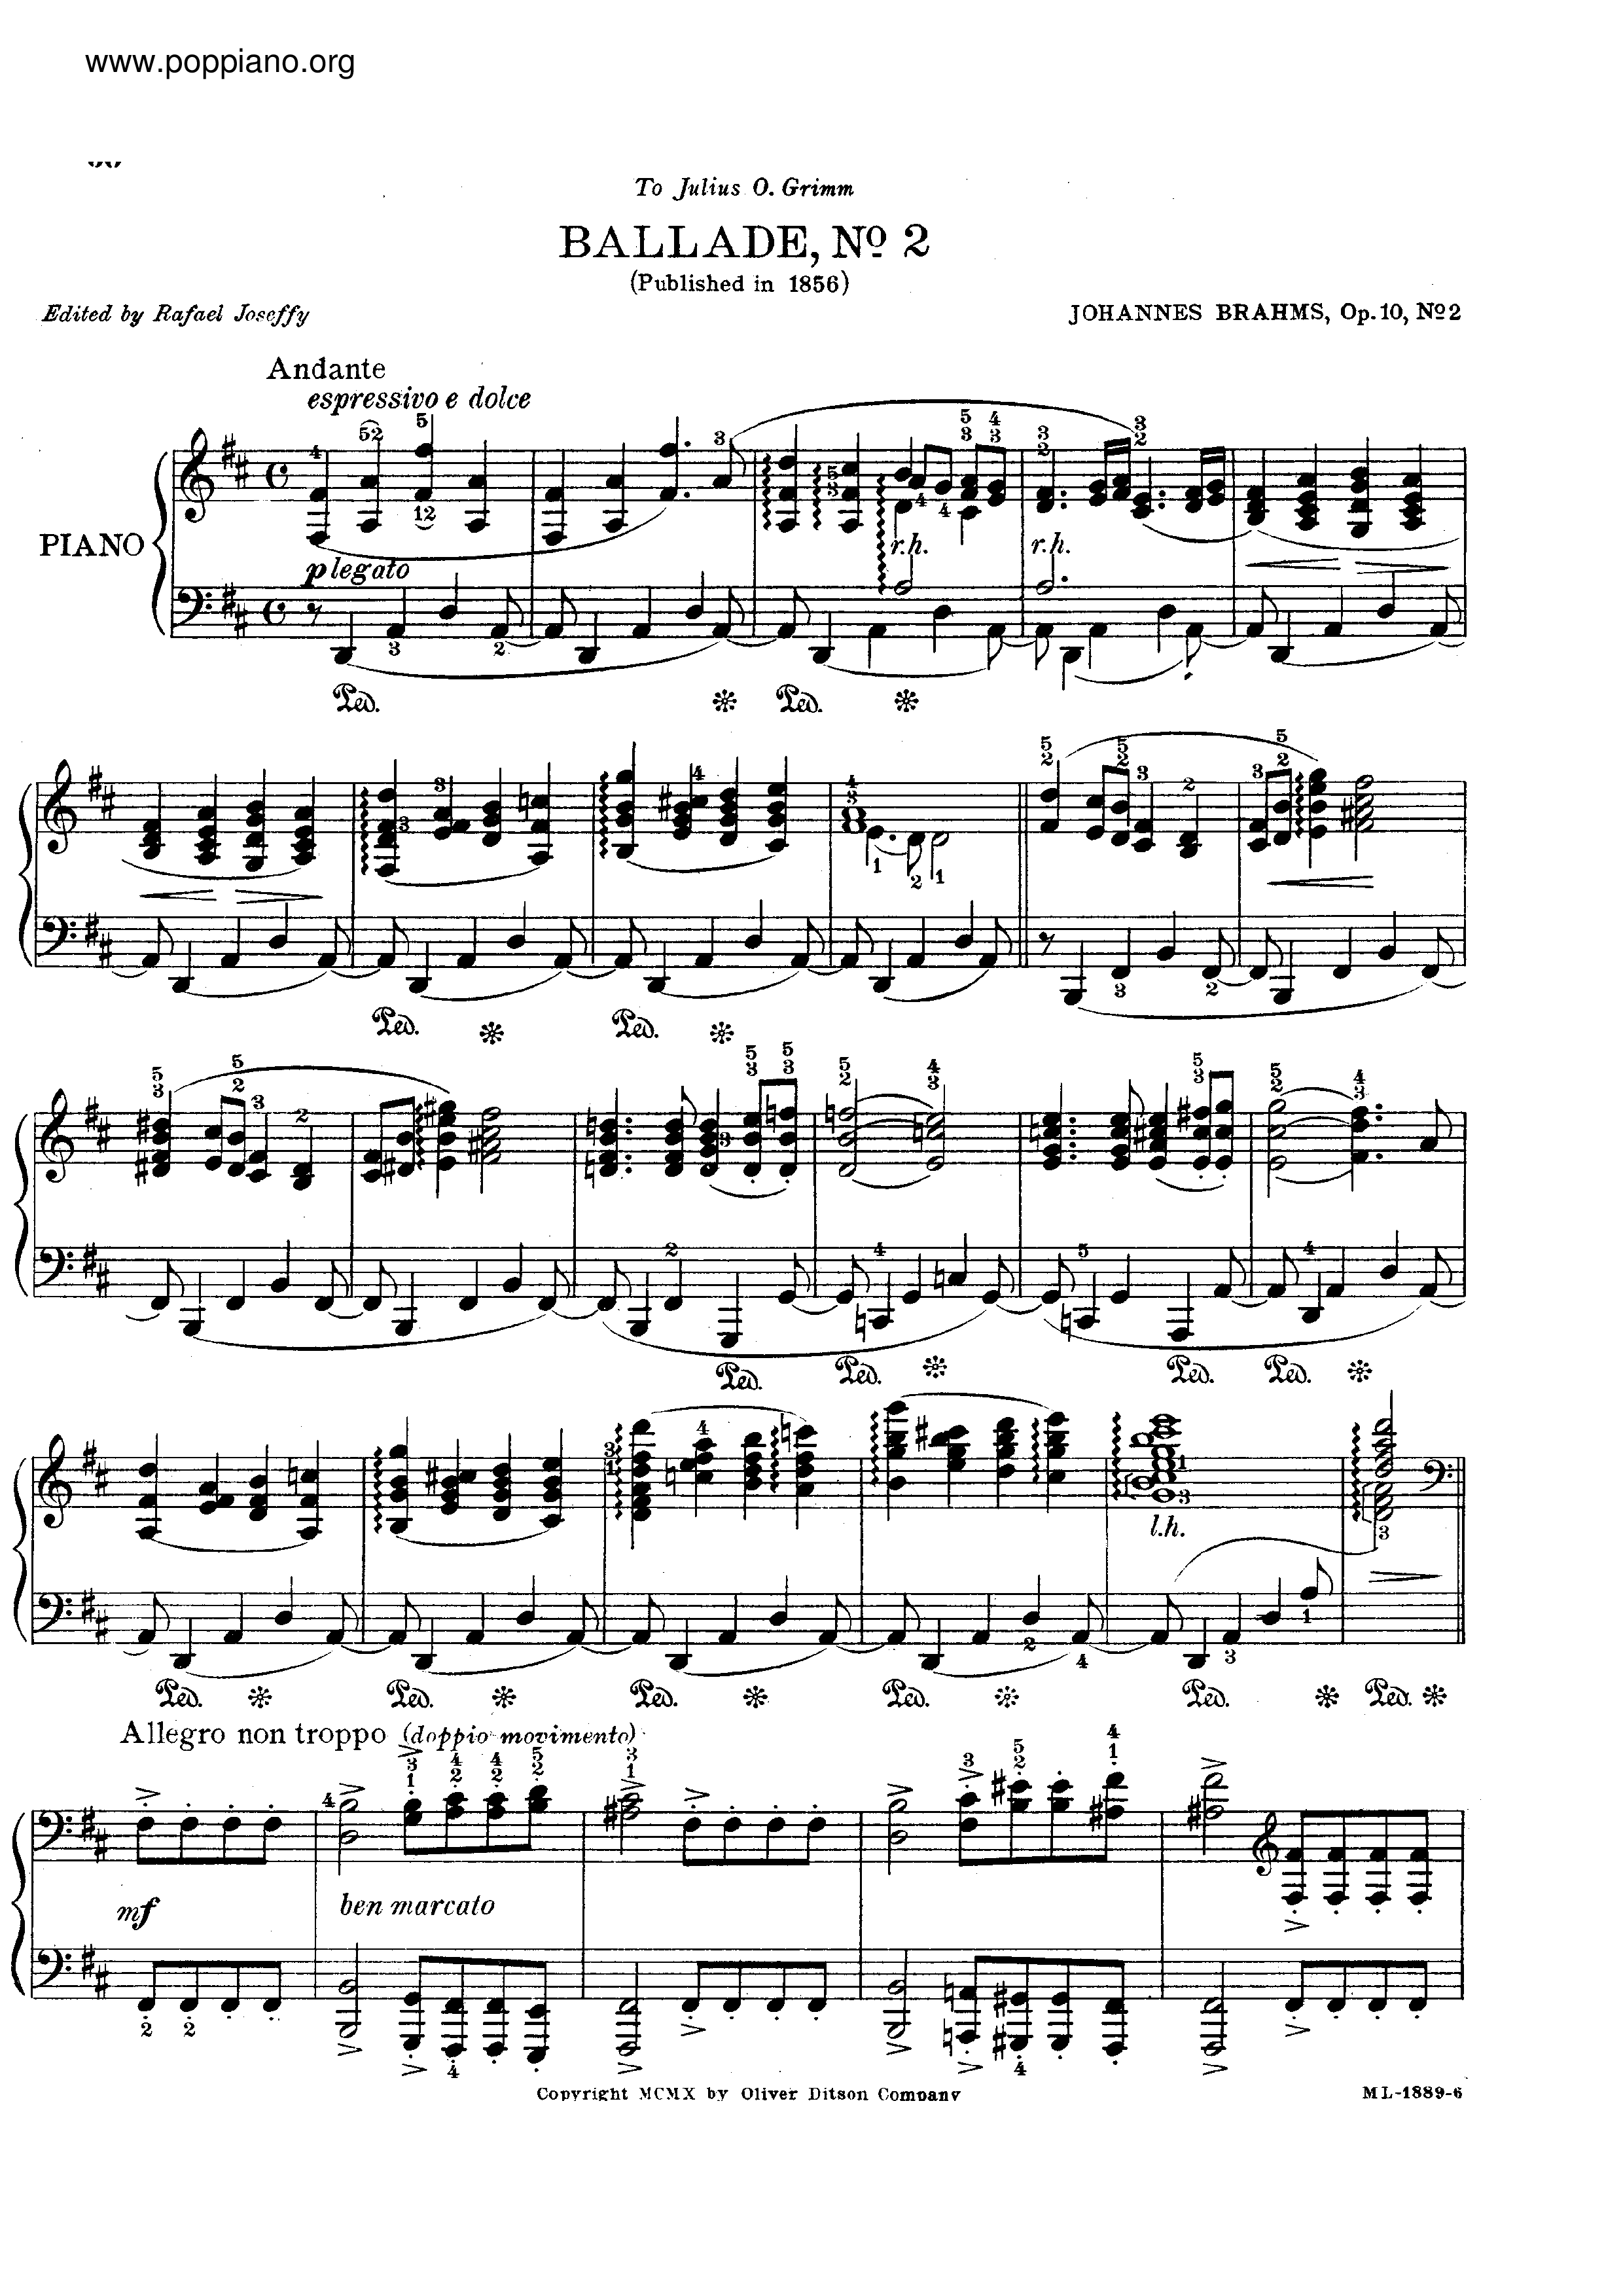 No. 2 in D major. Andante琴譜